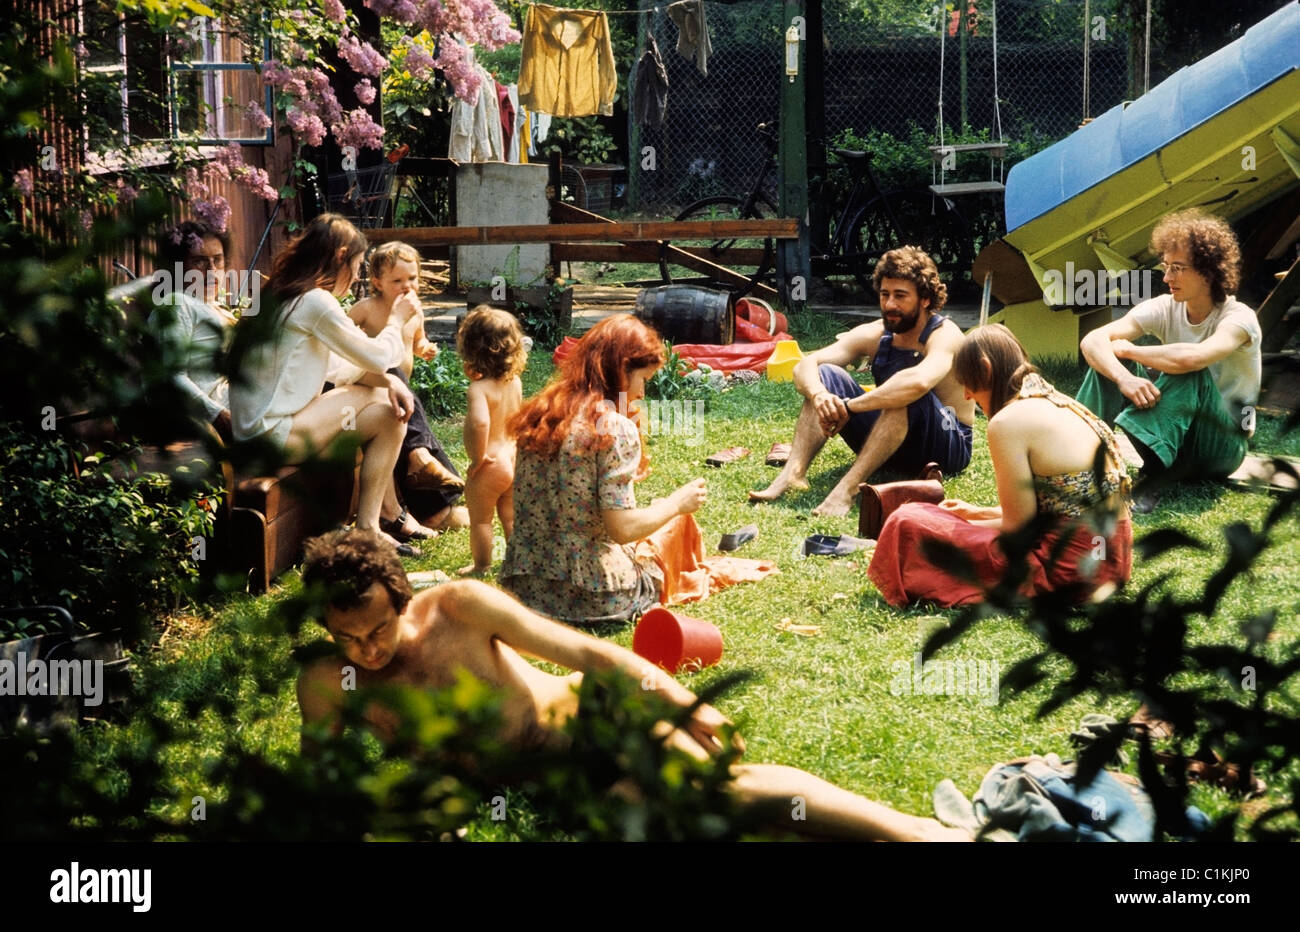 Hippy hippies membres d'une commune hippie 1970s assis avec des enfants parlant à la maison dans un jardin communal urbain de Camberwell dans la vague de chaleur de 1976 à l'été de '76 (été de 1976) sud de Londres Angleterre Royaume-Uni Grande-Bretagne KATHY DEWITT Banque D'Images